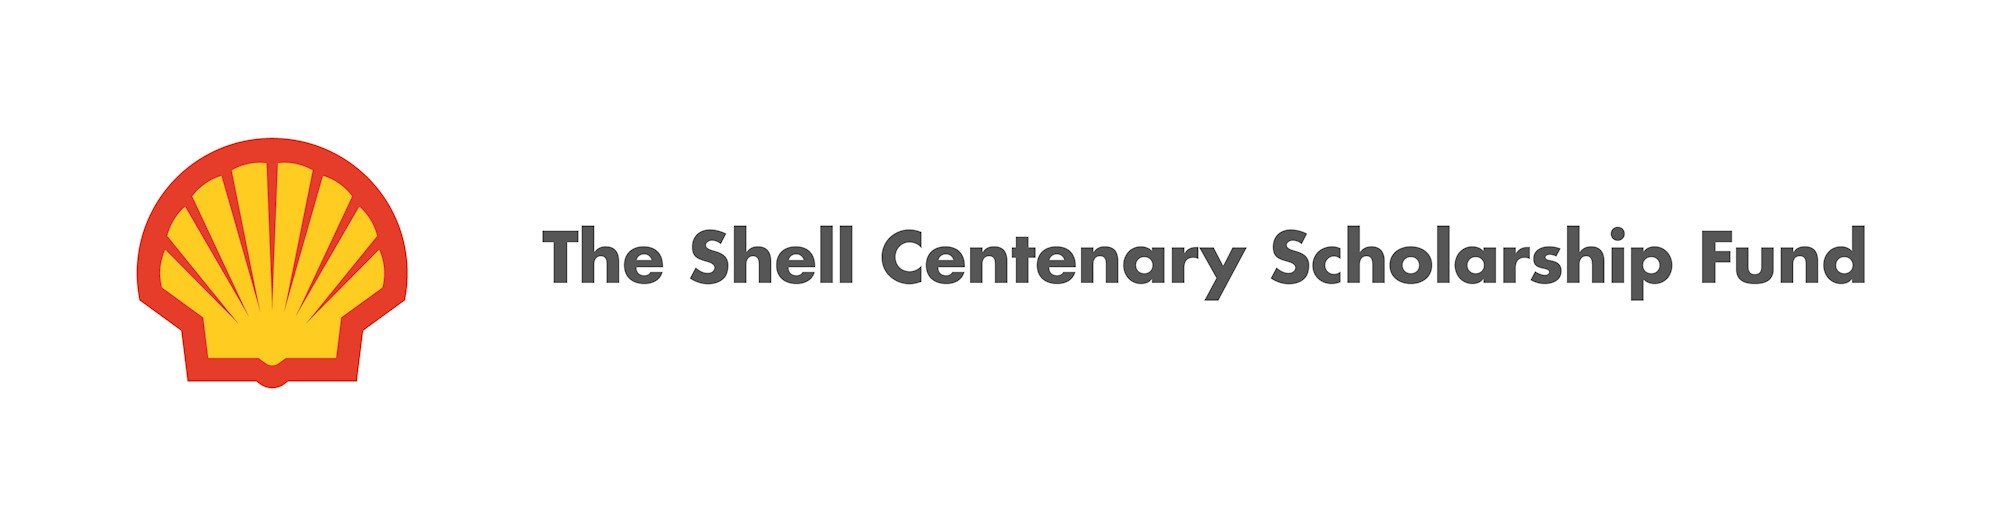 The Shell Centenary Scholarship Fund logo